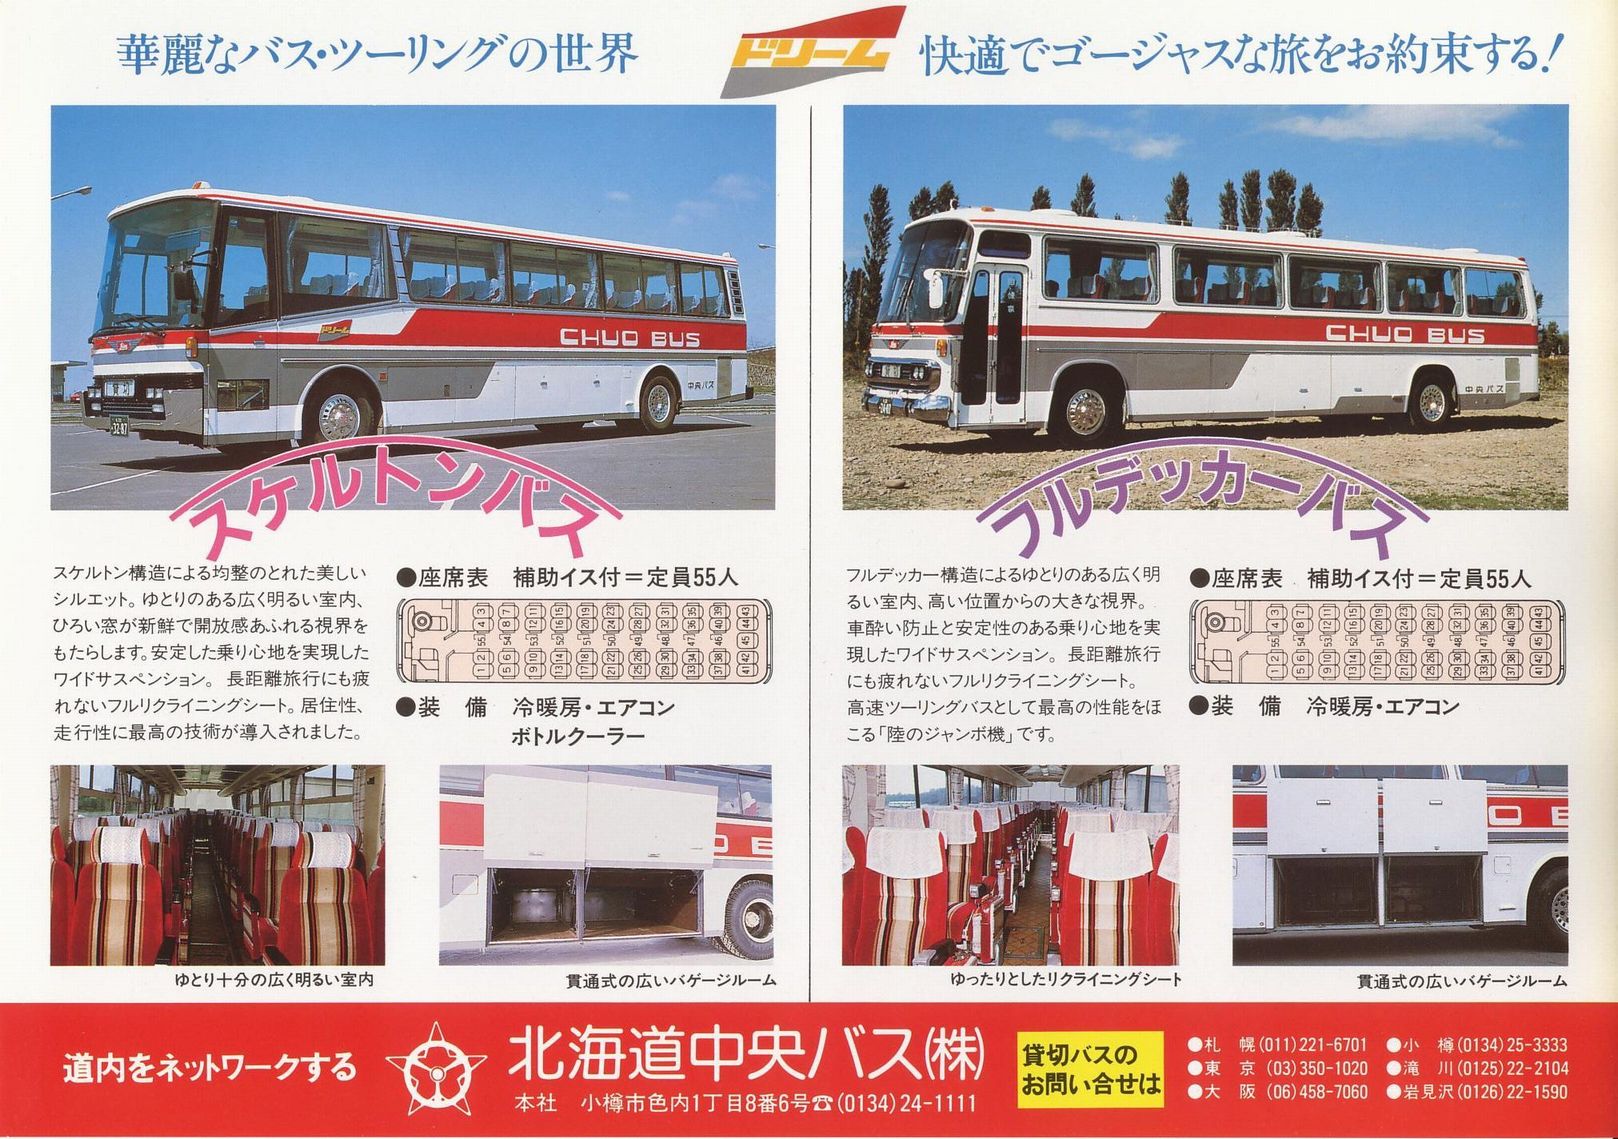 1987-12-01入手_北海道中央バス(貸切)_「ドリーム号」チラシ